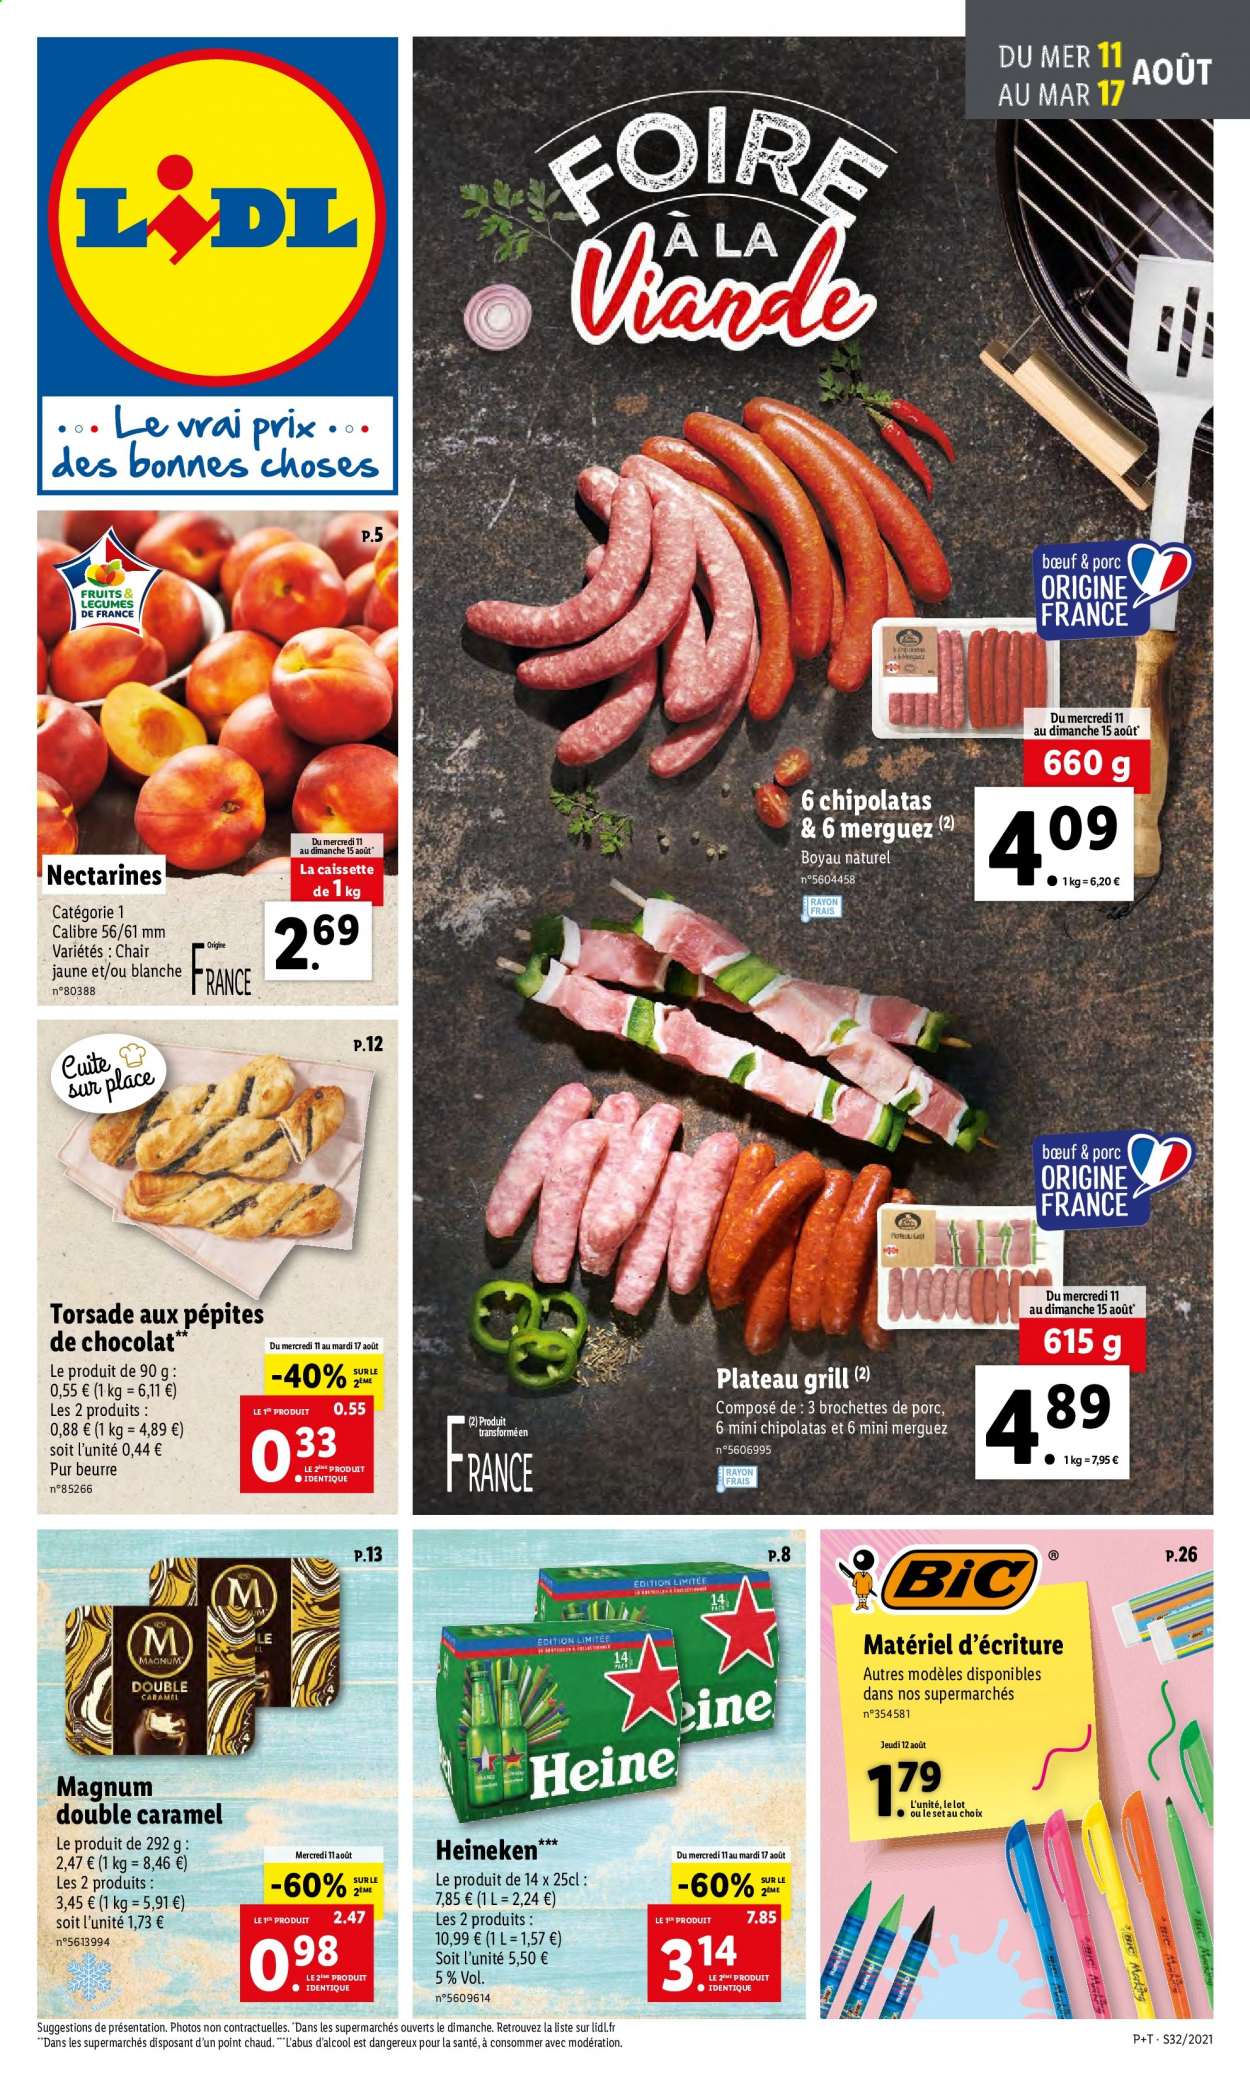 thumbnail - Catalogue Lidl - 11/08/2021 - 17/08/2021 - Produits soldés - brochettes de porc, bière, Heineken, nectarine, merguez, chipolata, Magnum, grill. Page 1.